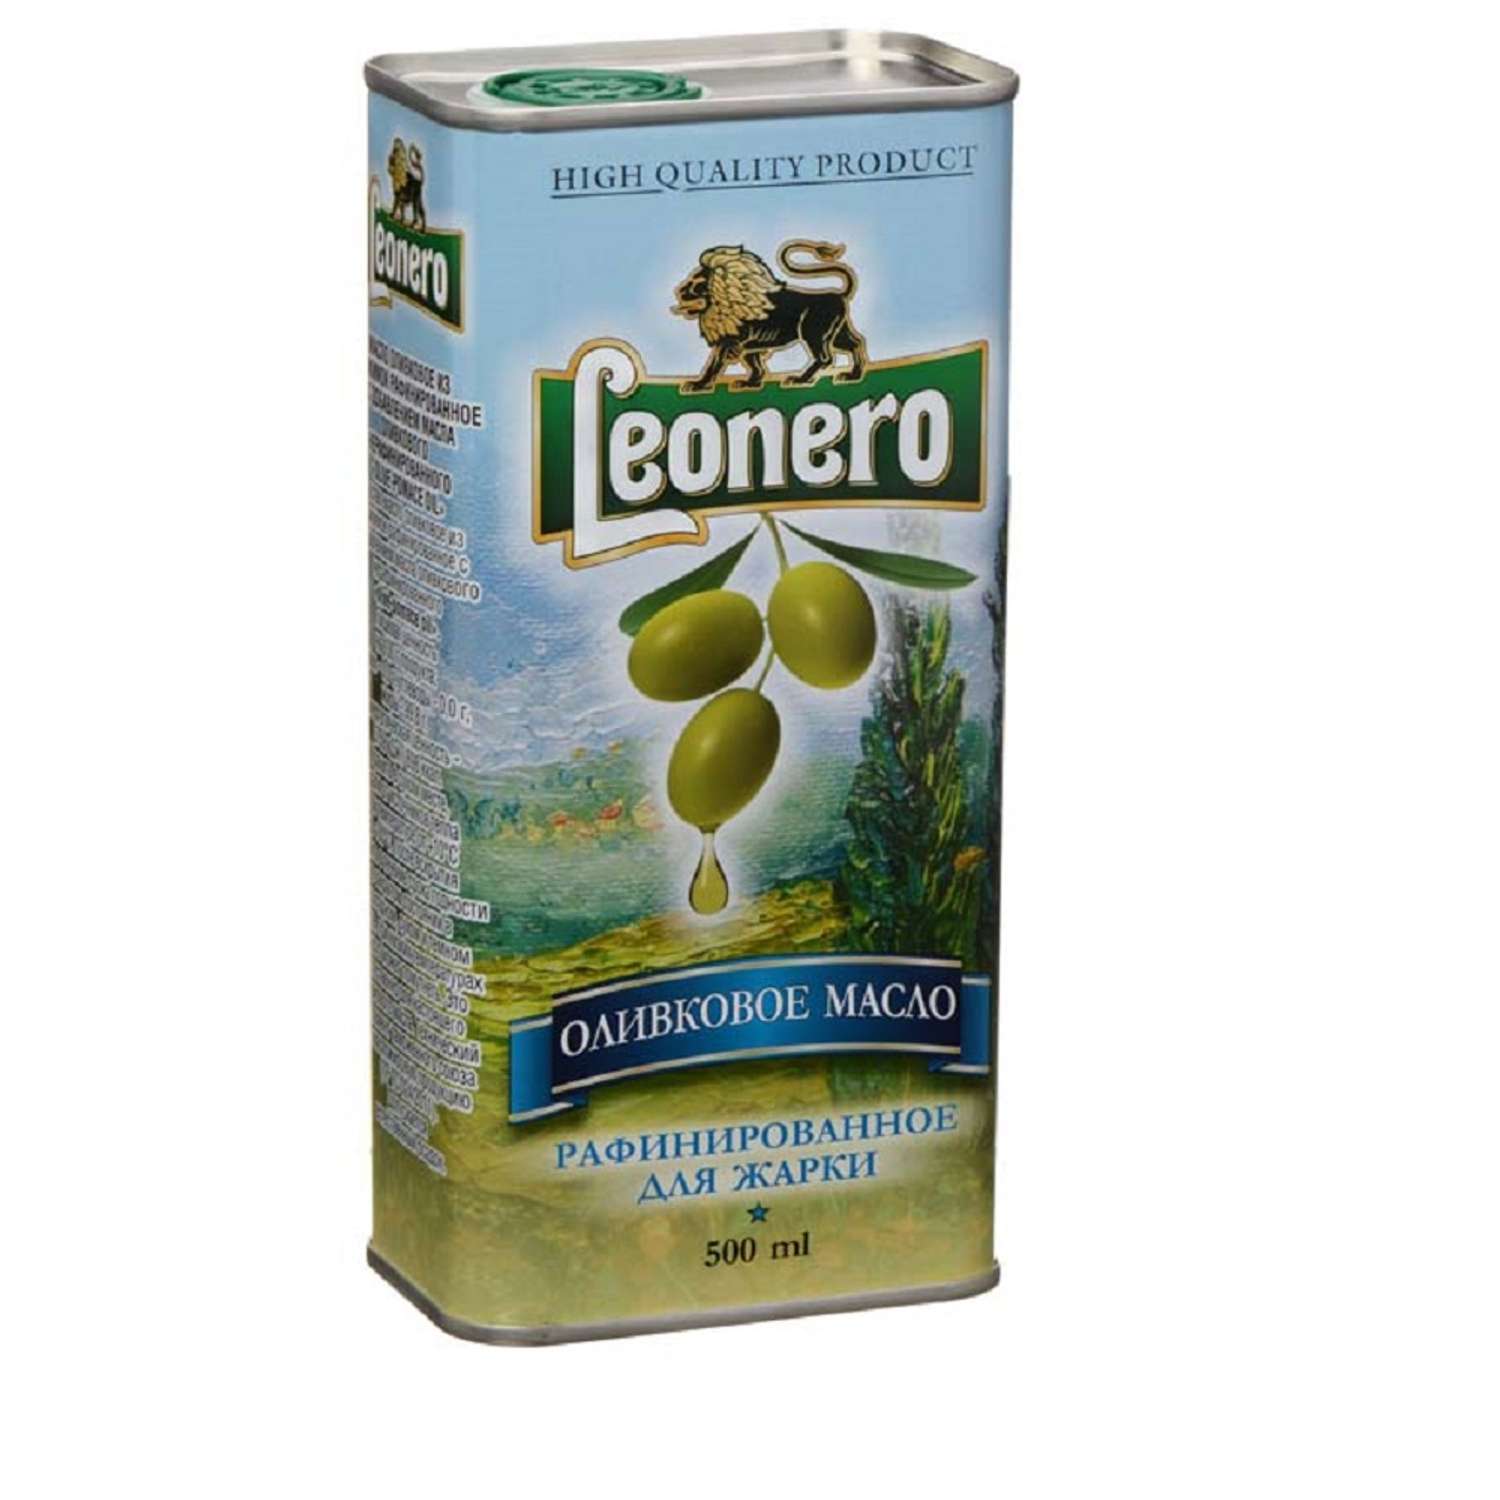 Оливковое масло Leonero пищевое рафинированное для жарки Испания жб 500 мл - фото 1